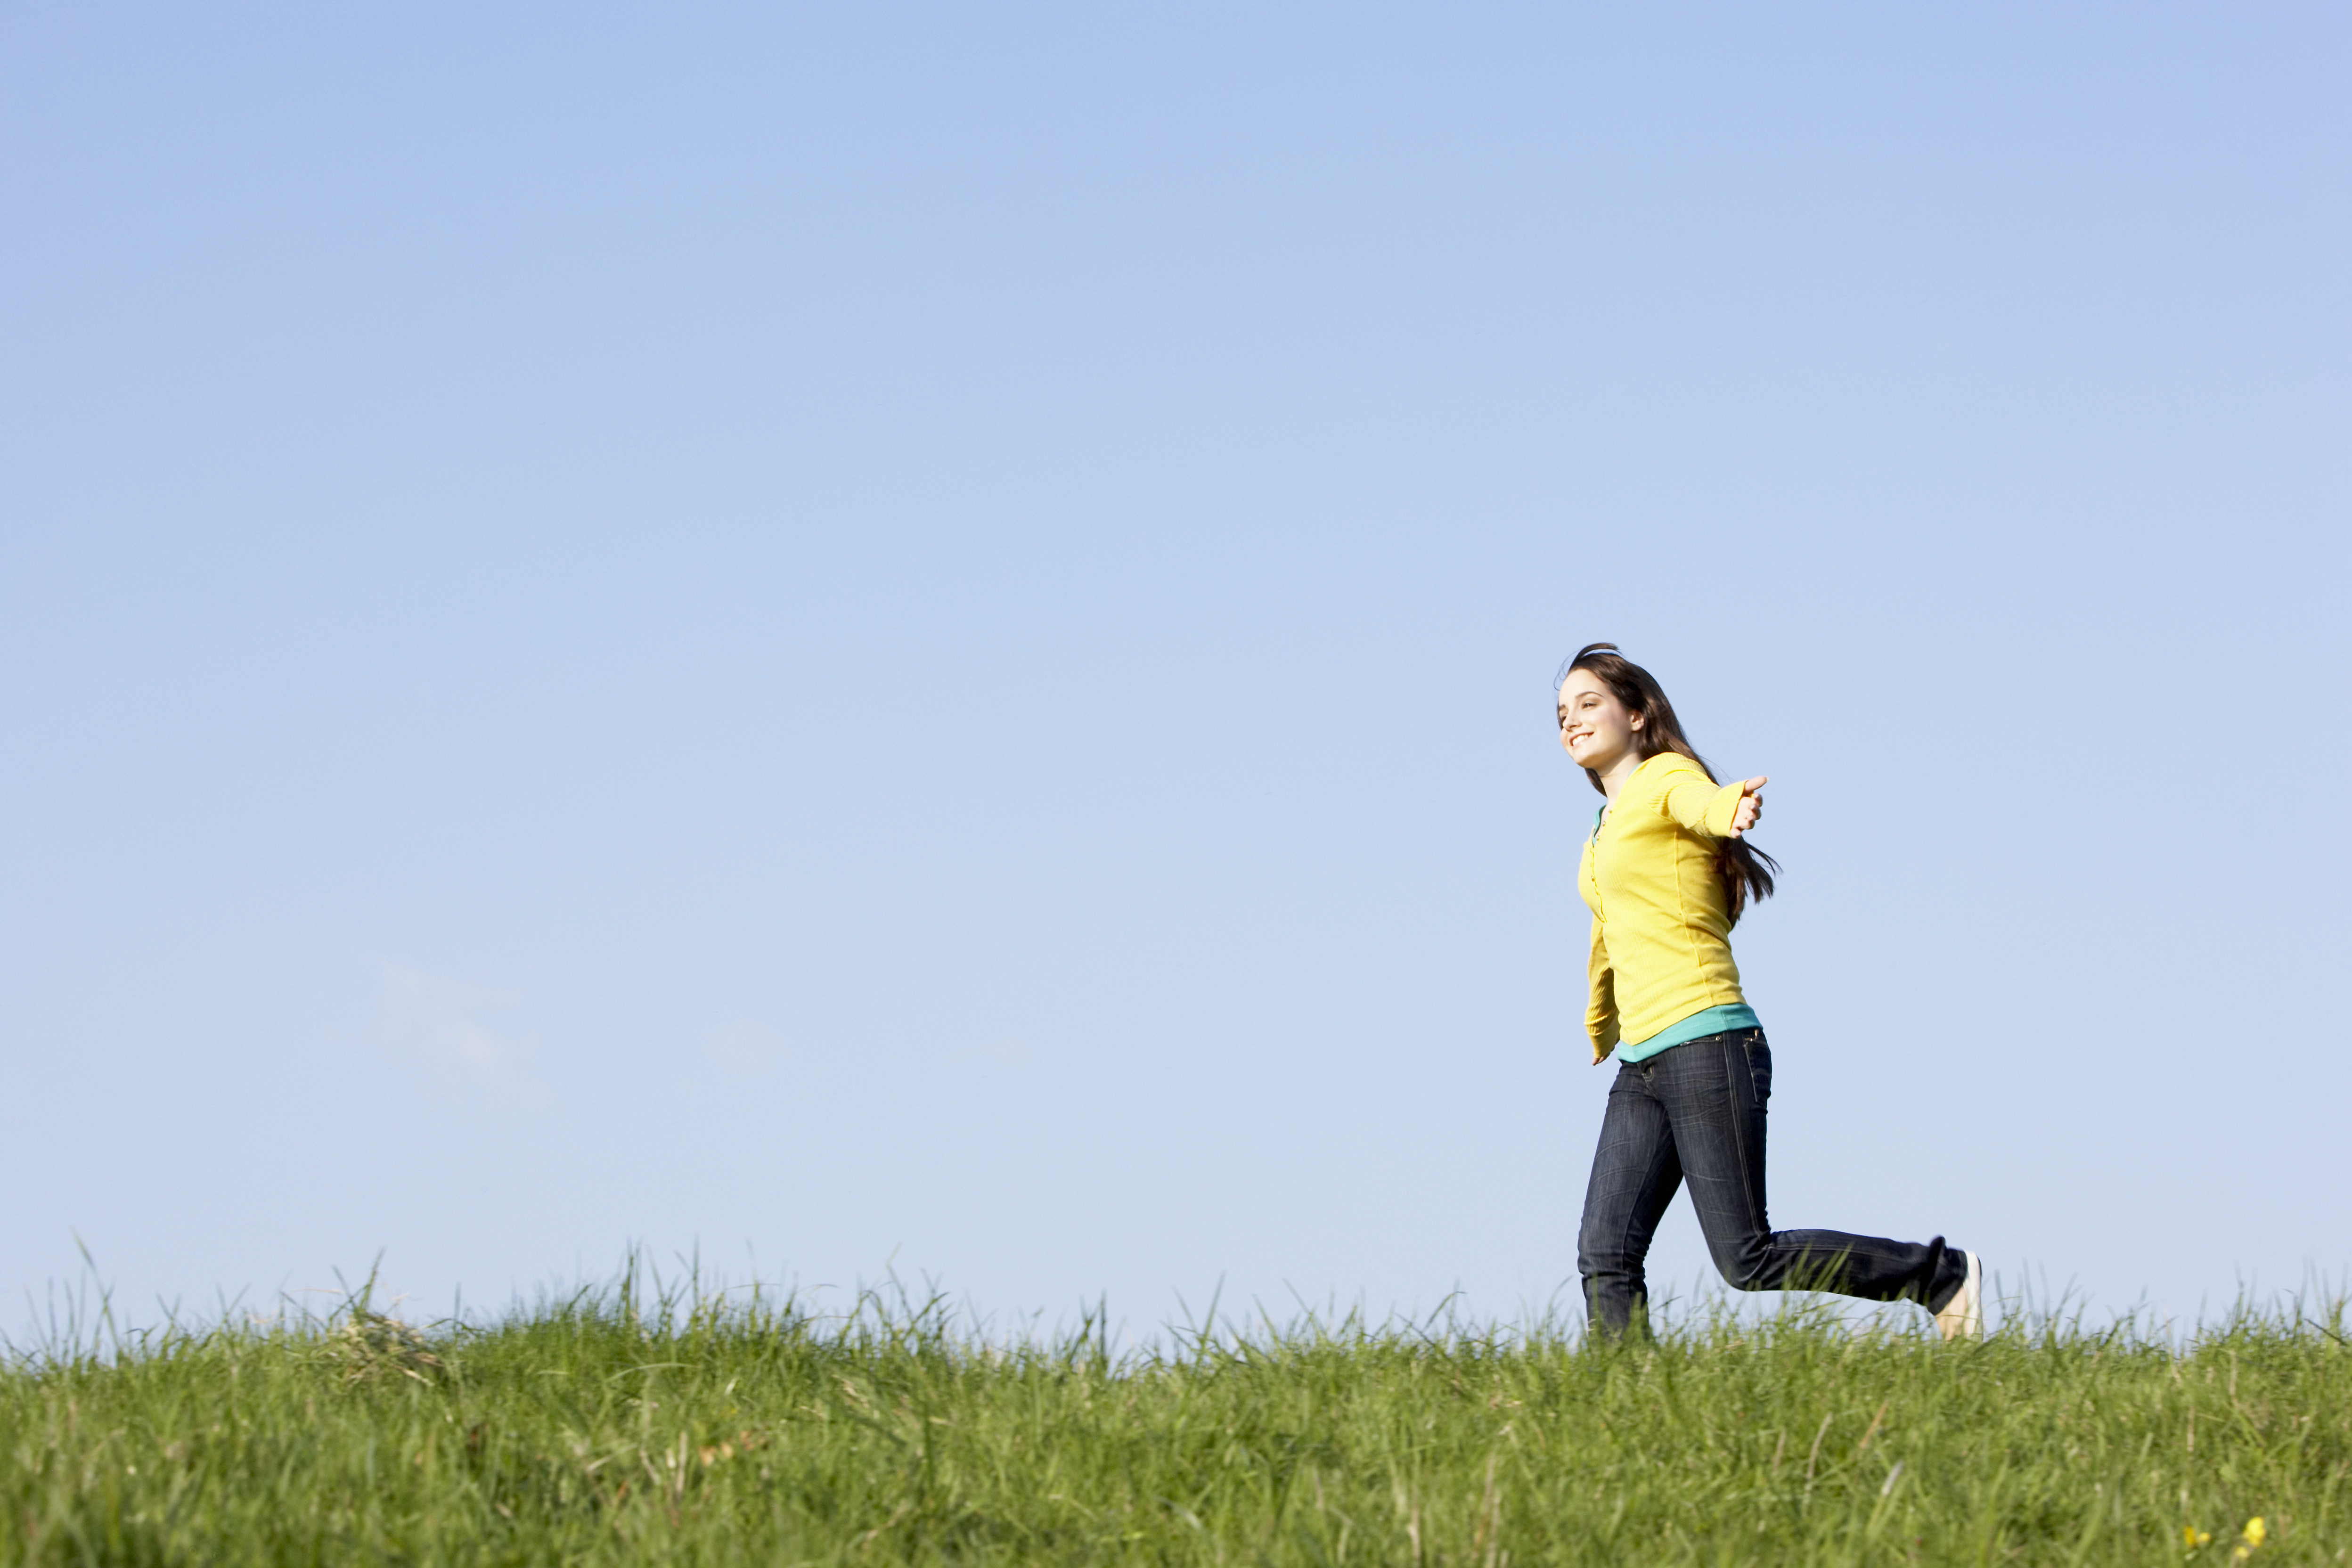 Adolescente corriendo por un prado en verano | Fuente: Shutterstock.com